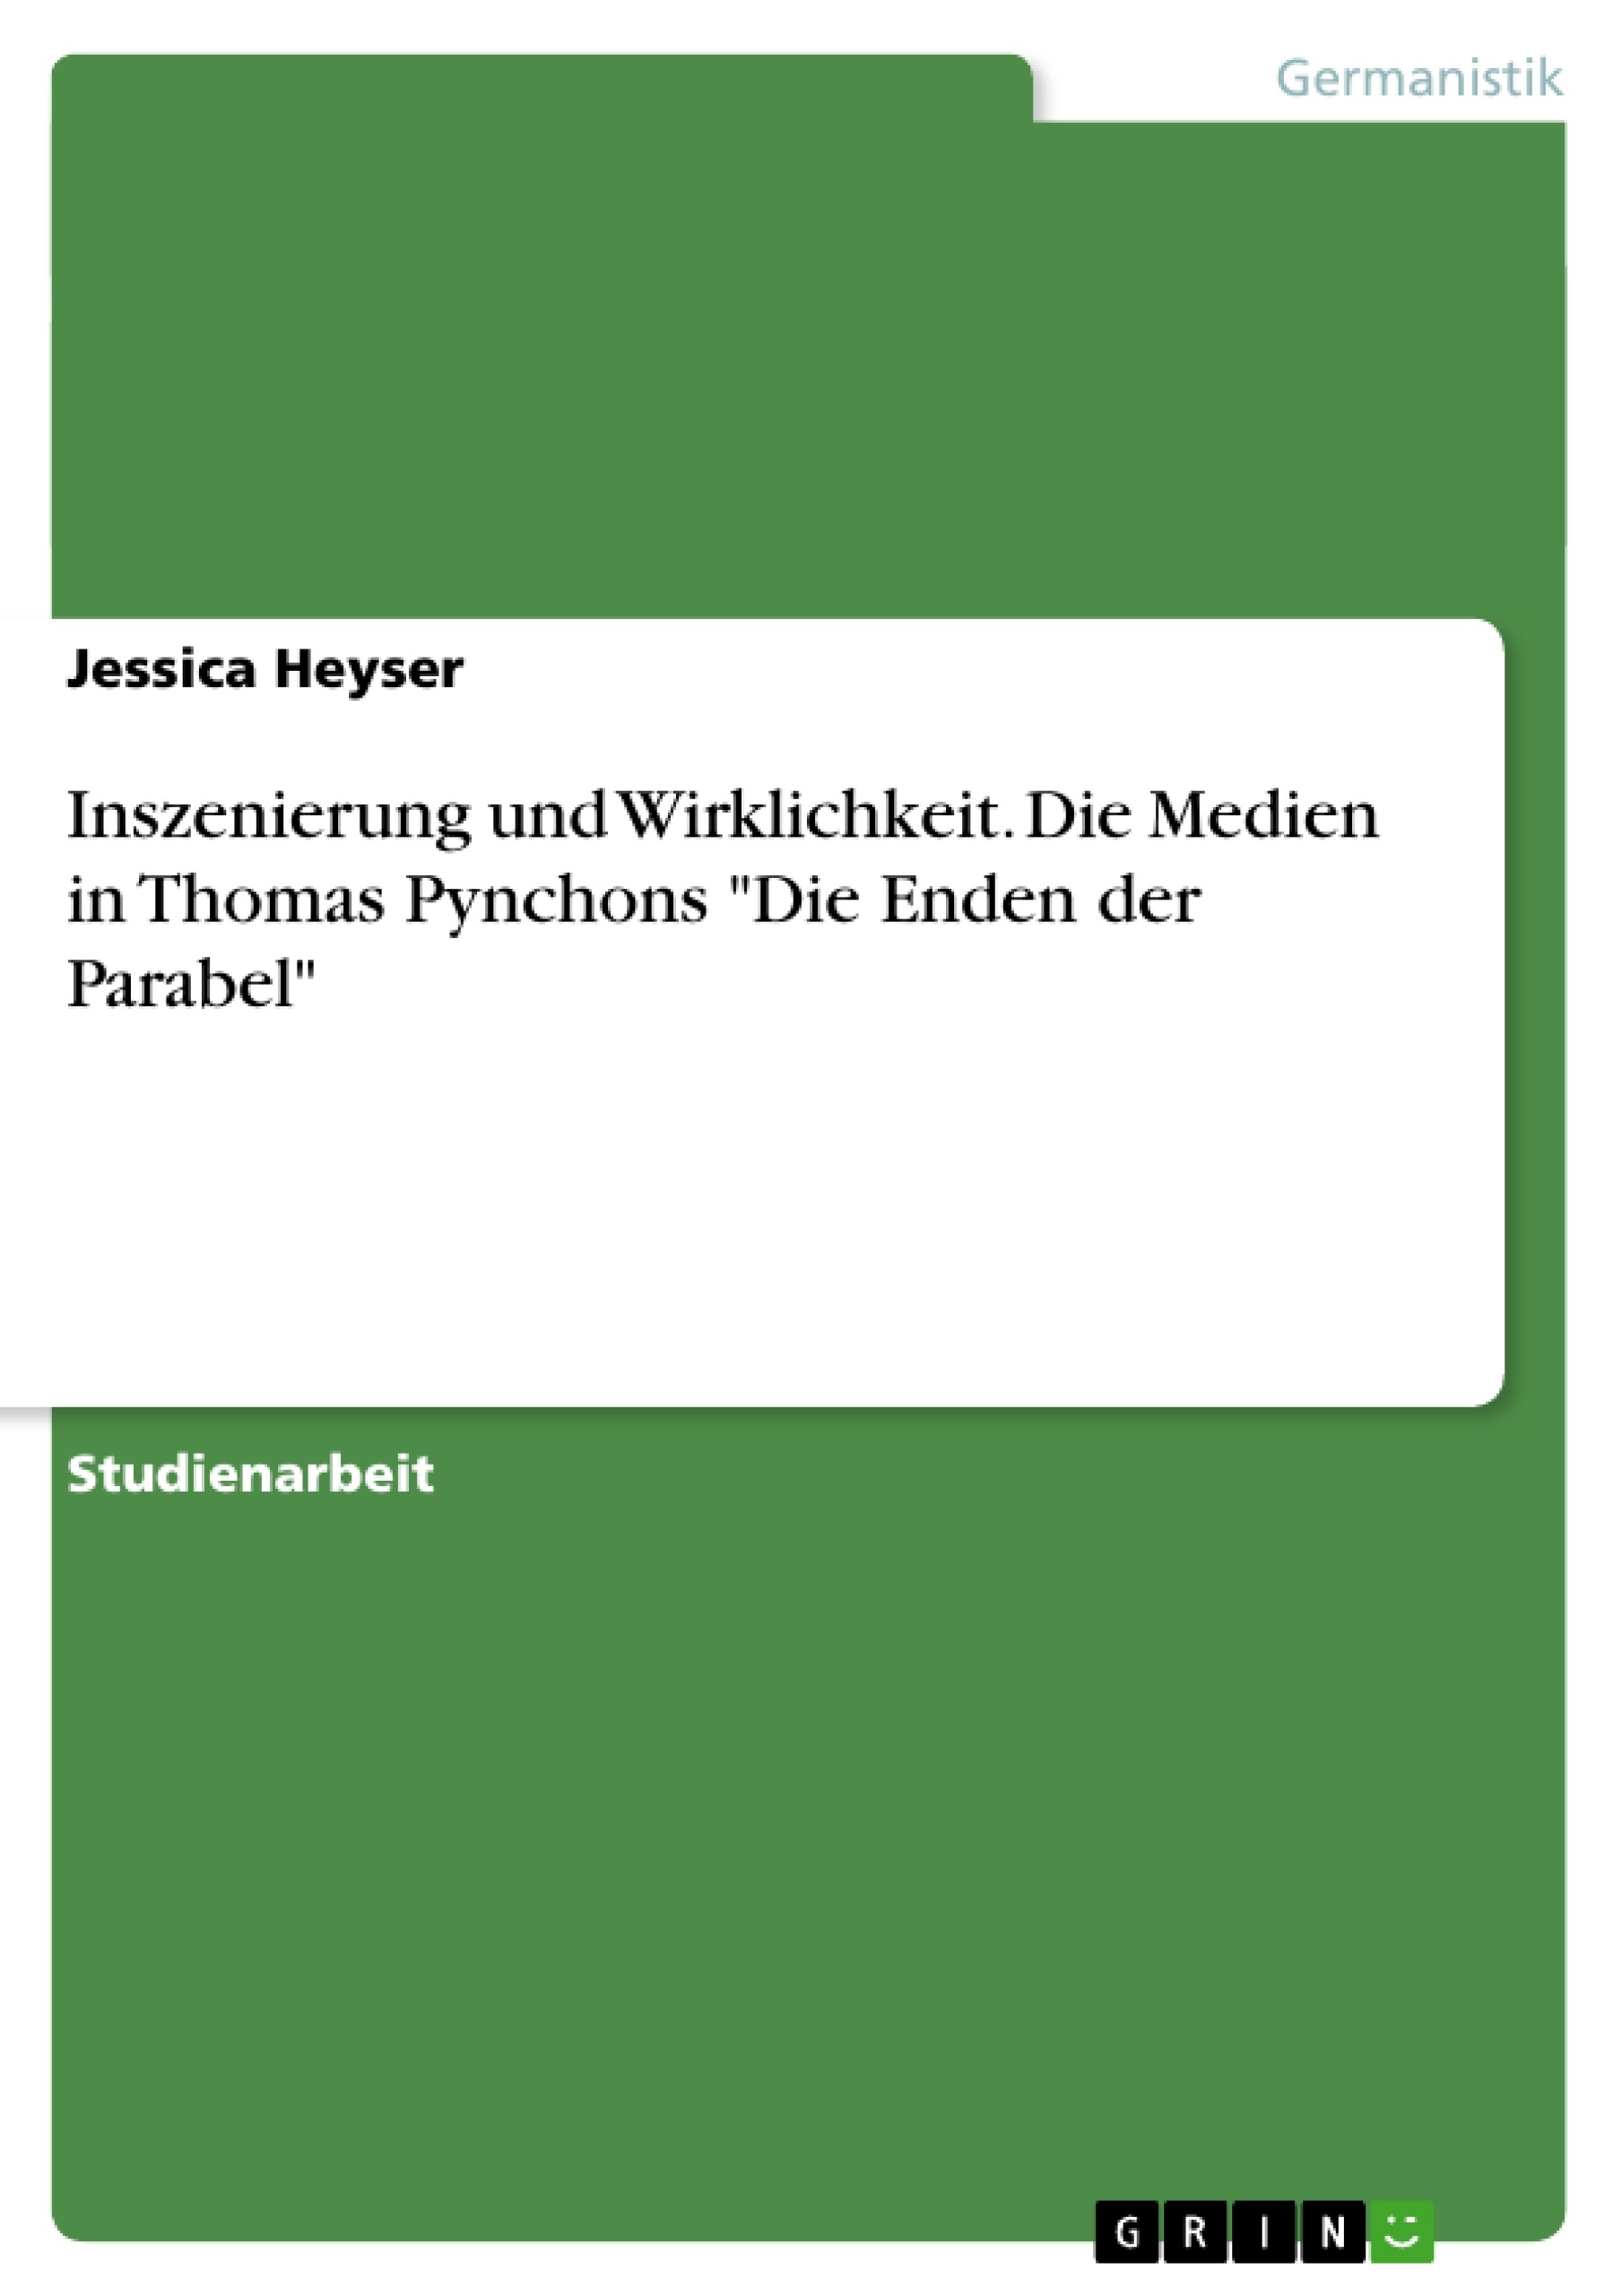 Title: Inszenierung und Wirklichkeit. Die Medien in Thomas Pynchons "Die Enden der Parabel"